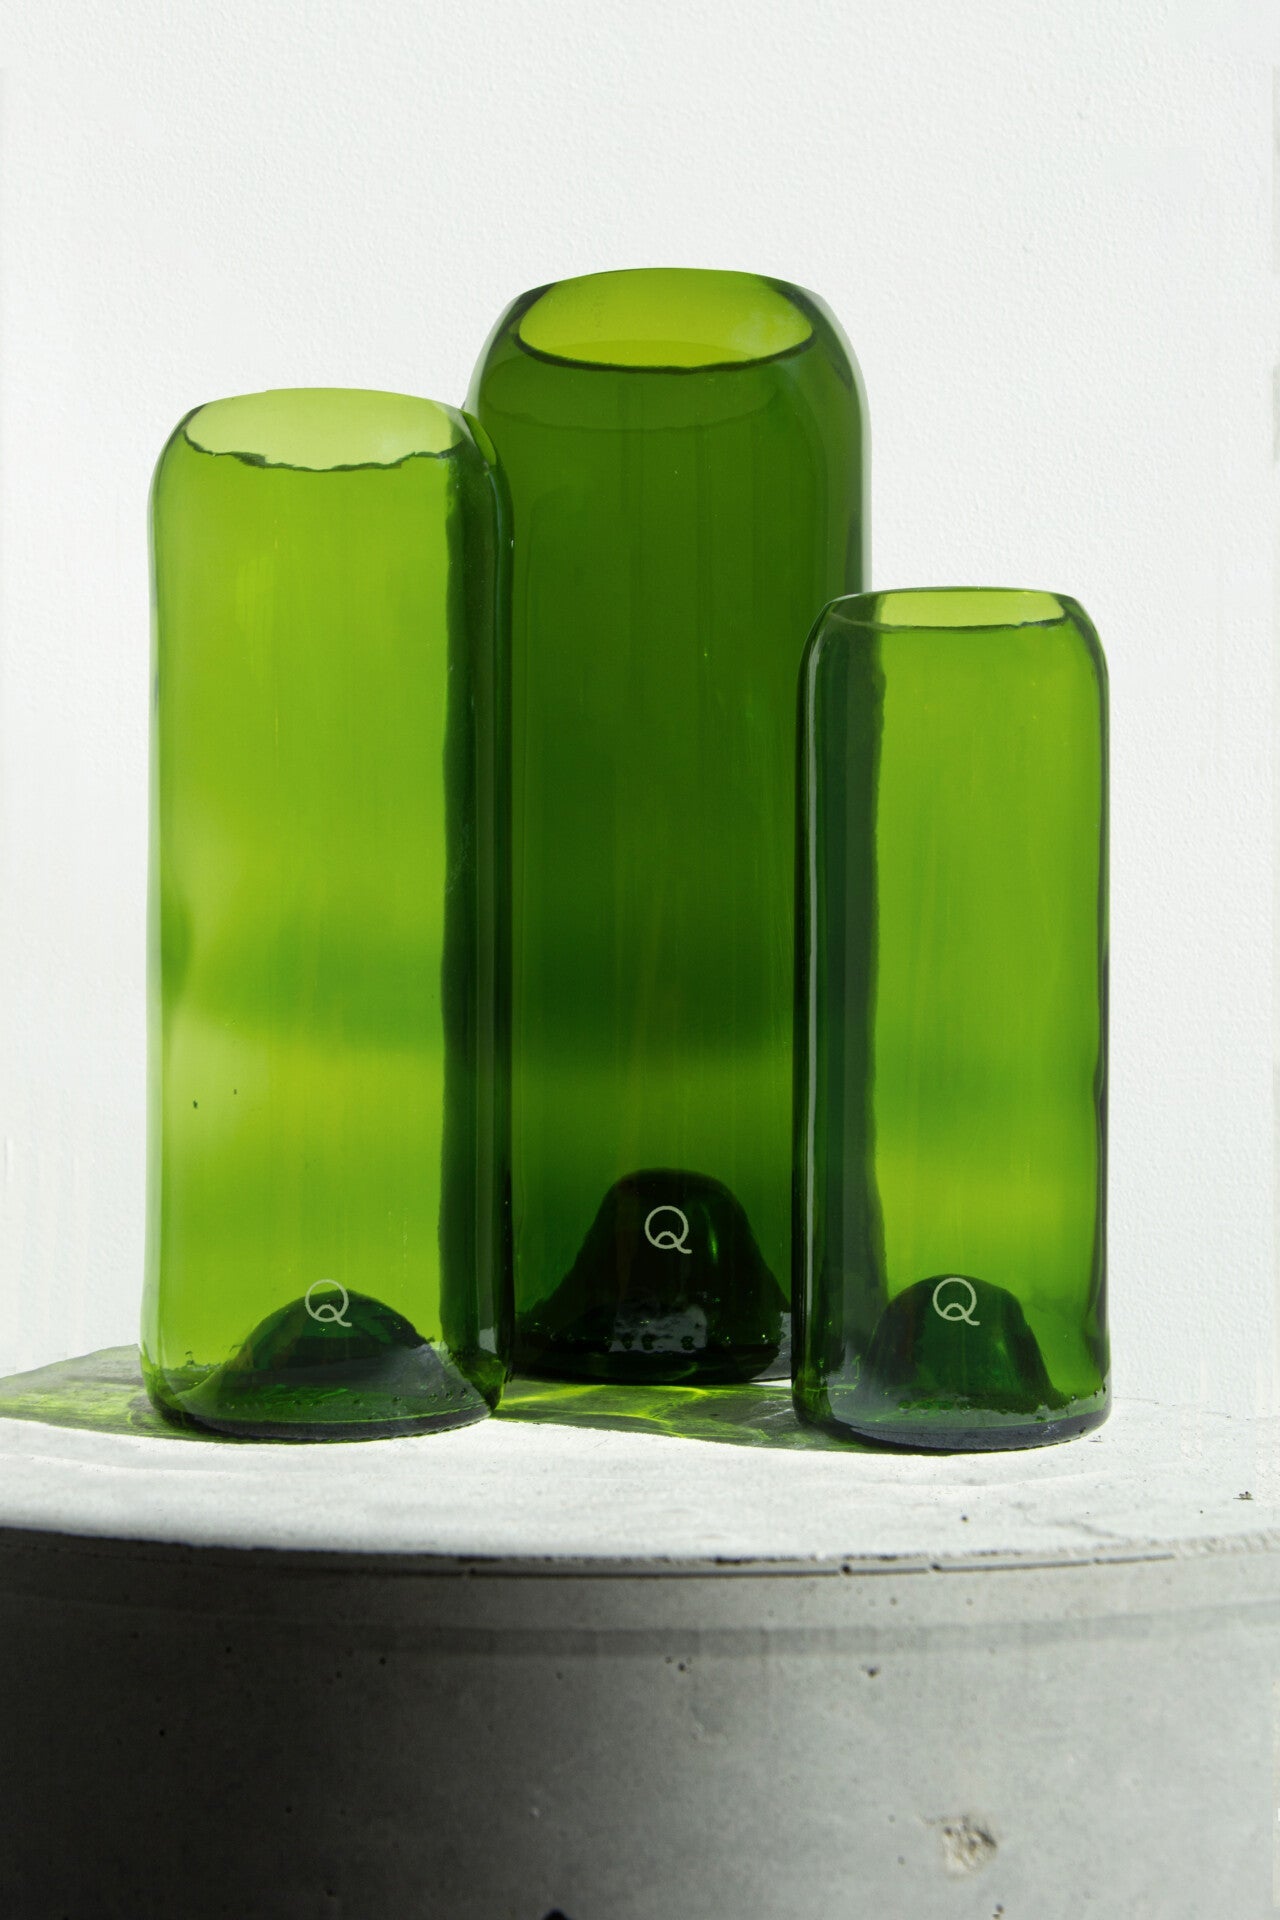 Q de bouteilles - Q de bouteilles est une entreprise française qui surcycle et transforme les contenants en verre en objets d'art de la table et de décoration.